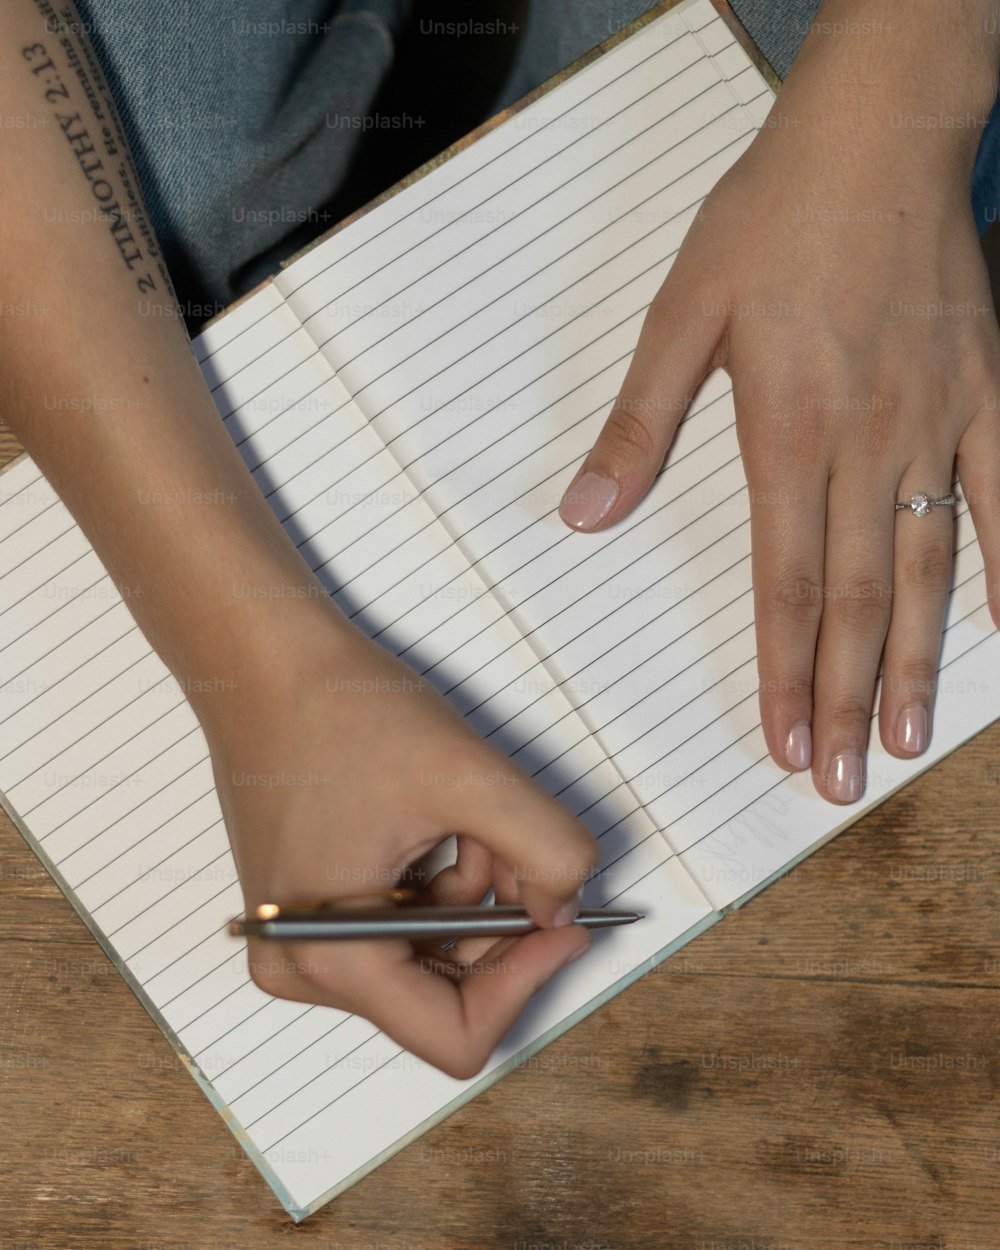 une personne tenant un stylo et écrivant sur un cahier